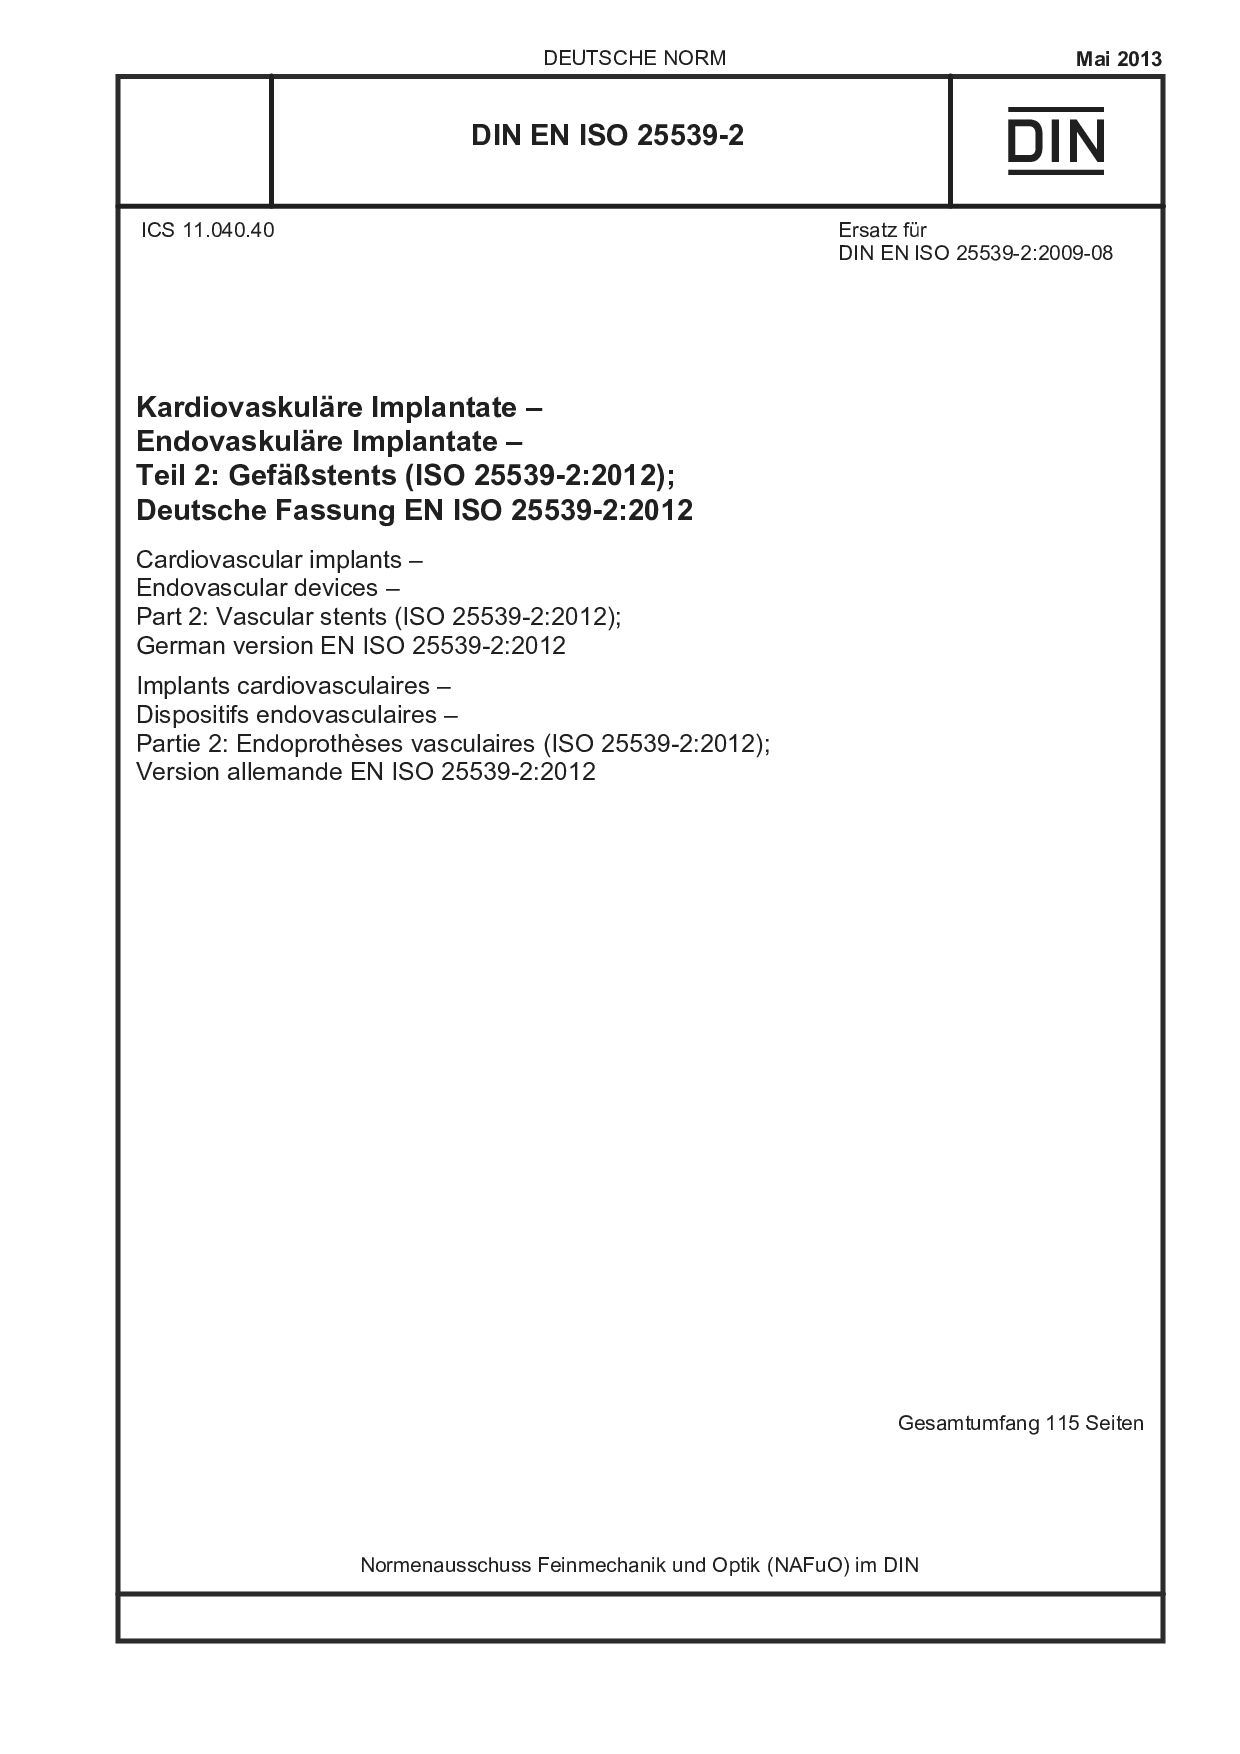 DIN EN ISO 25539-2:2013